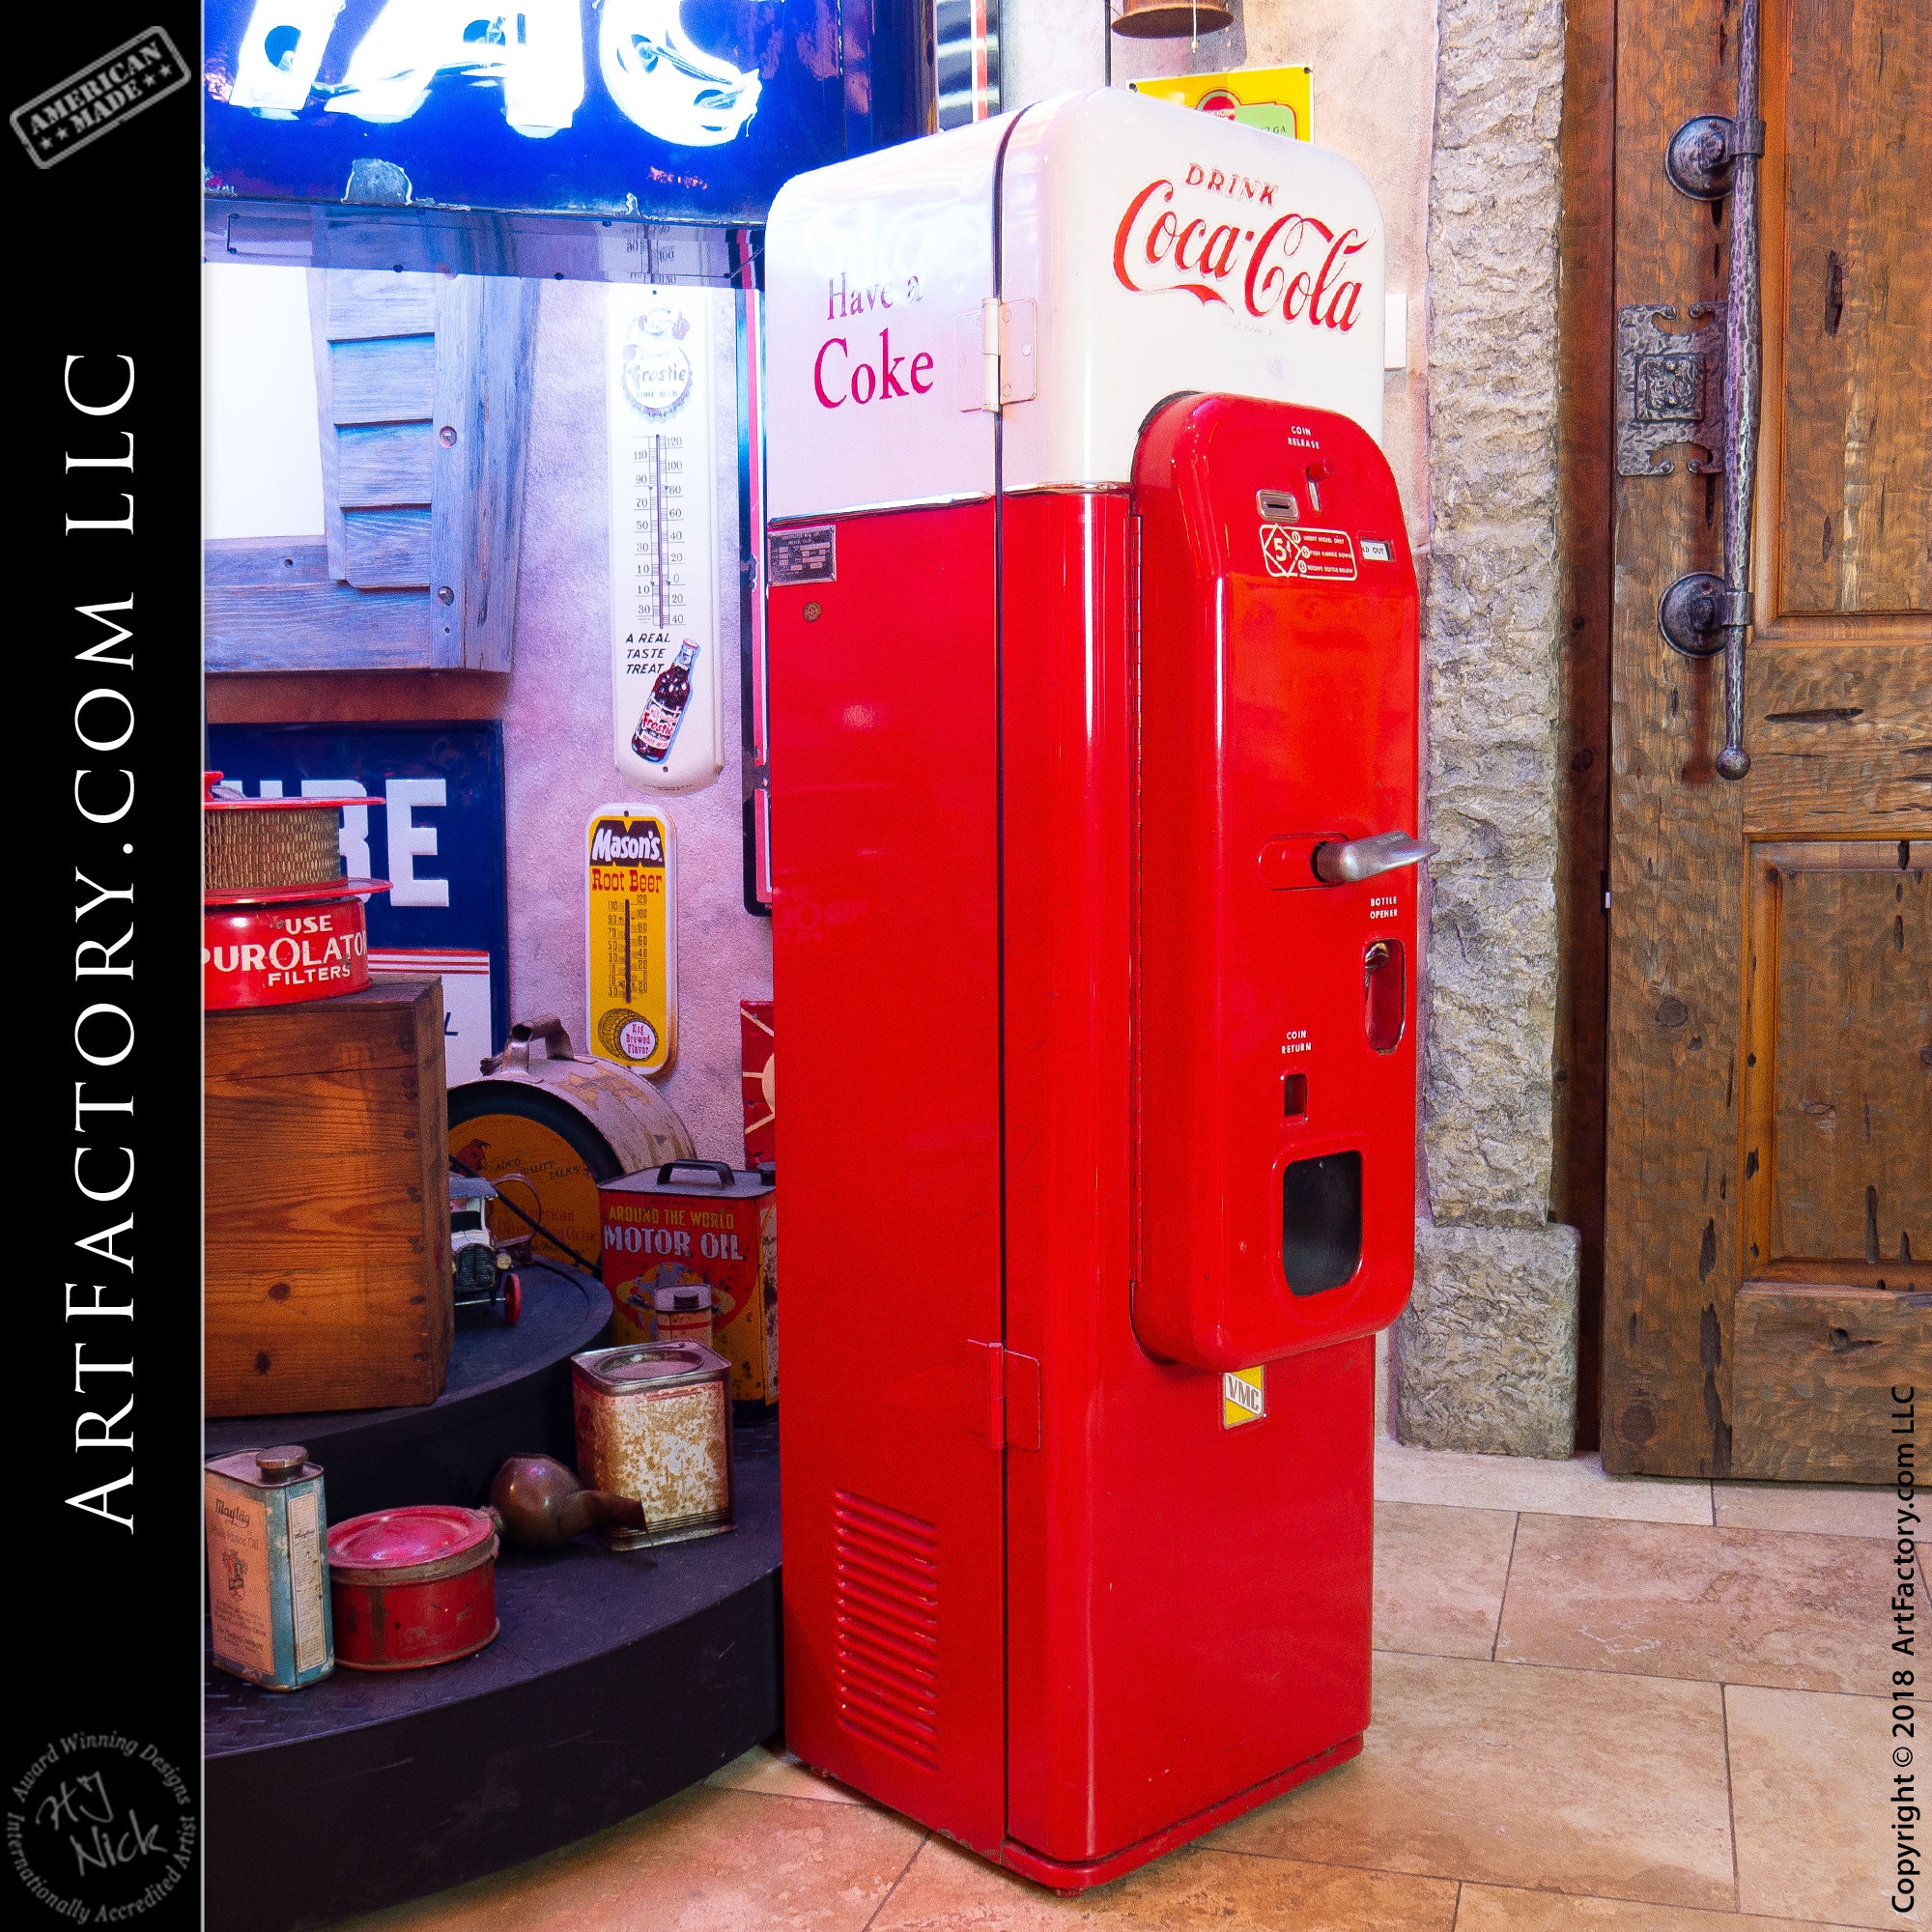 Vendo 44 Soda Machine: Extremely Rare Original 1950’s Coke Vendor